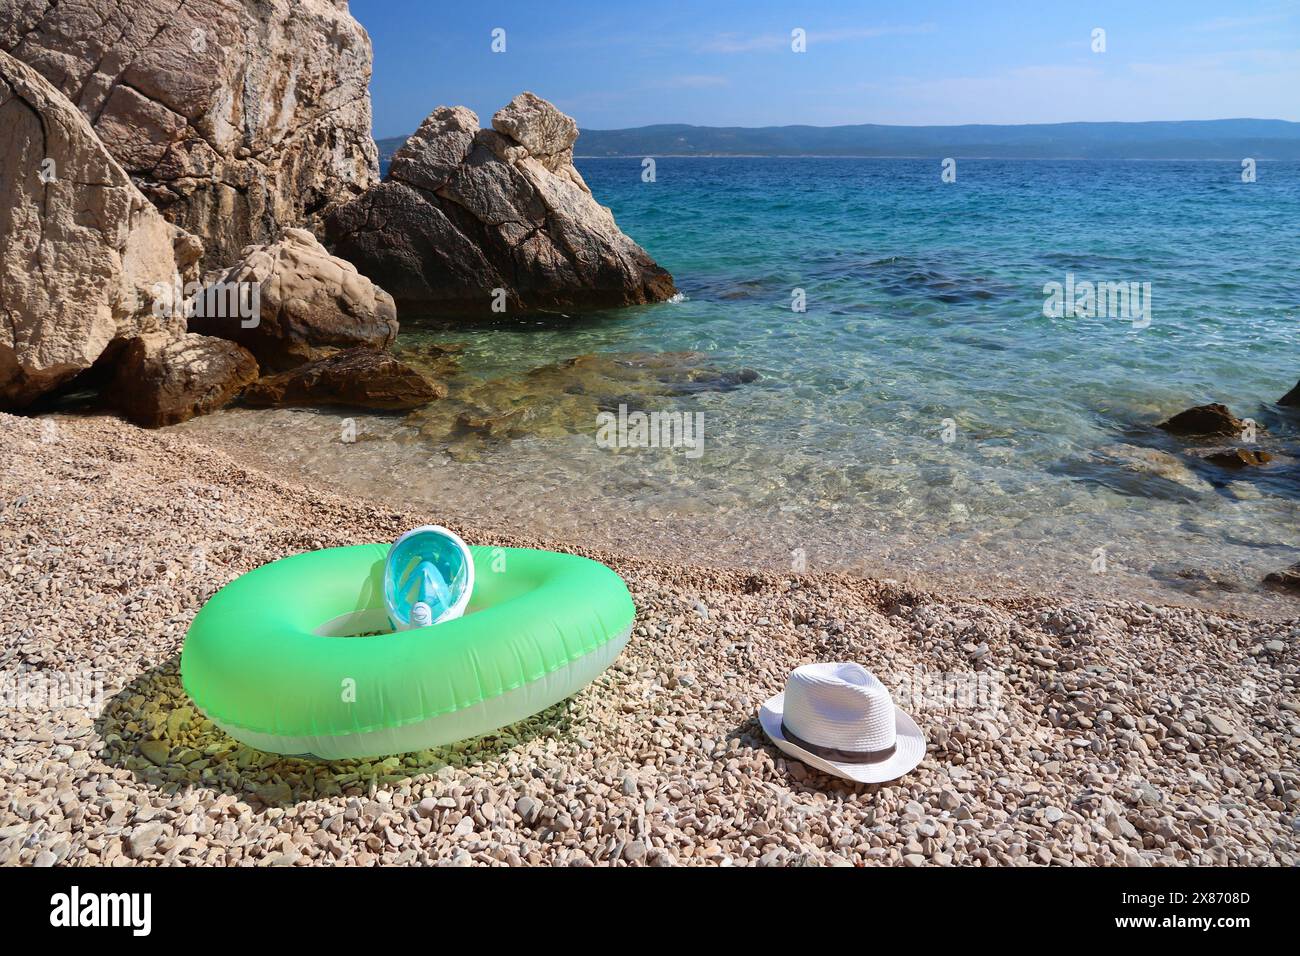 Croatie vacances d'été temps ensoleillé. Équipement de plage à Marusici plage - mer Adriatique (région de Makarska Riviera). Roue gonflable, masque de plongée et Banque D'Images